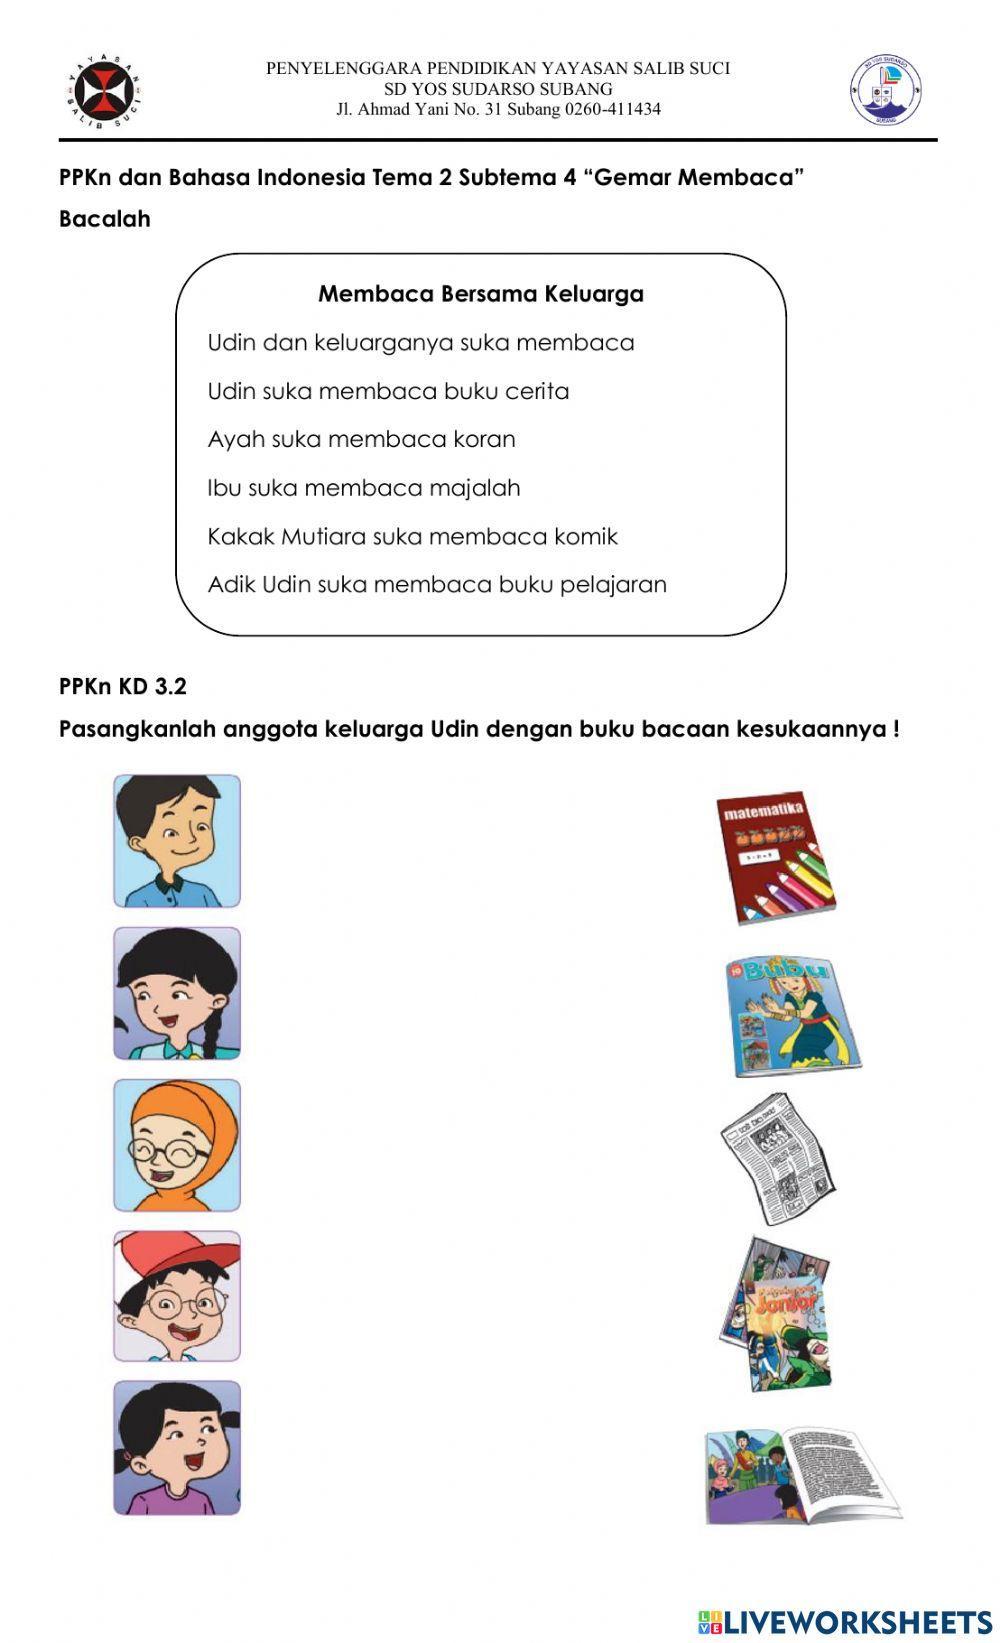 PPKn dan Bahasa Indonesia-Gemar Membaca